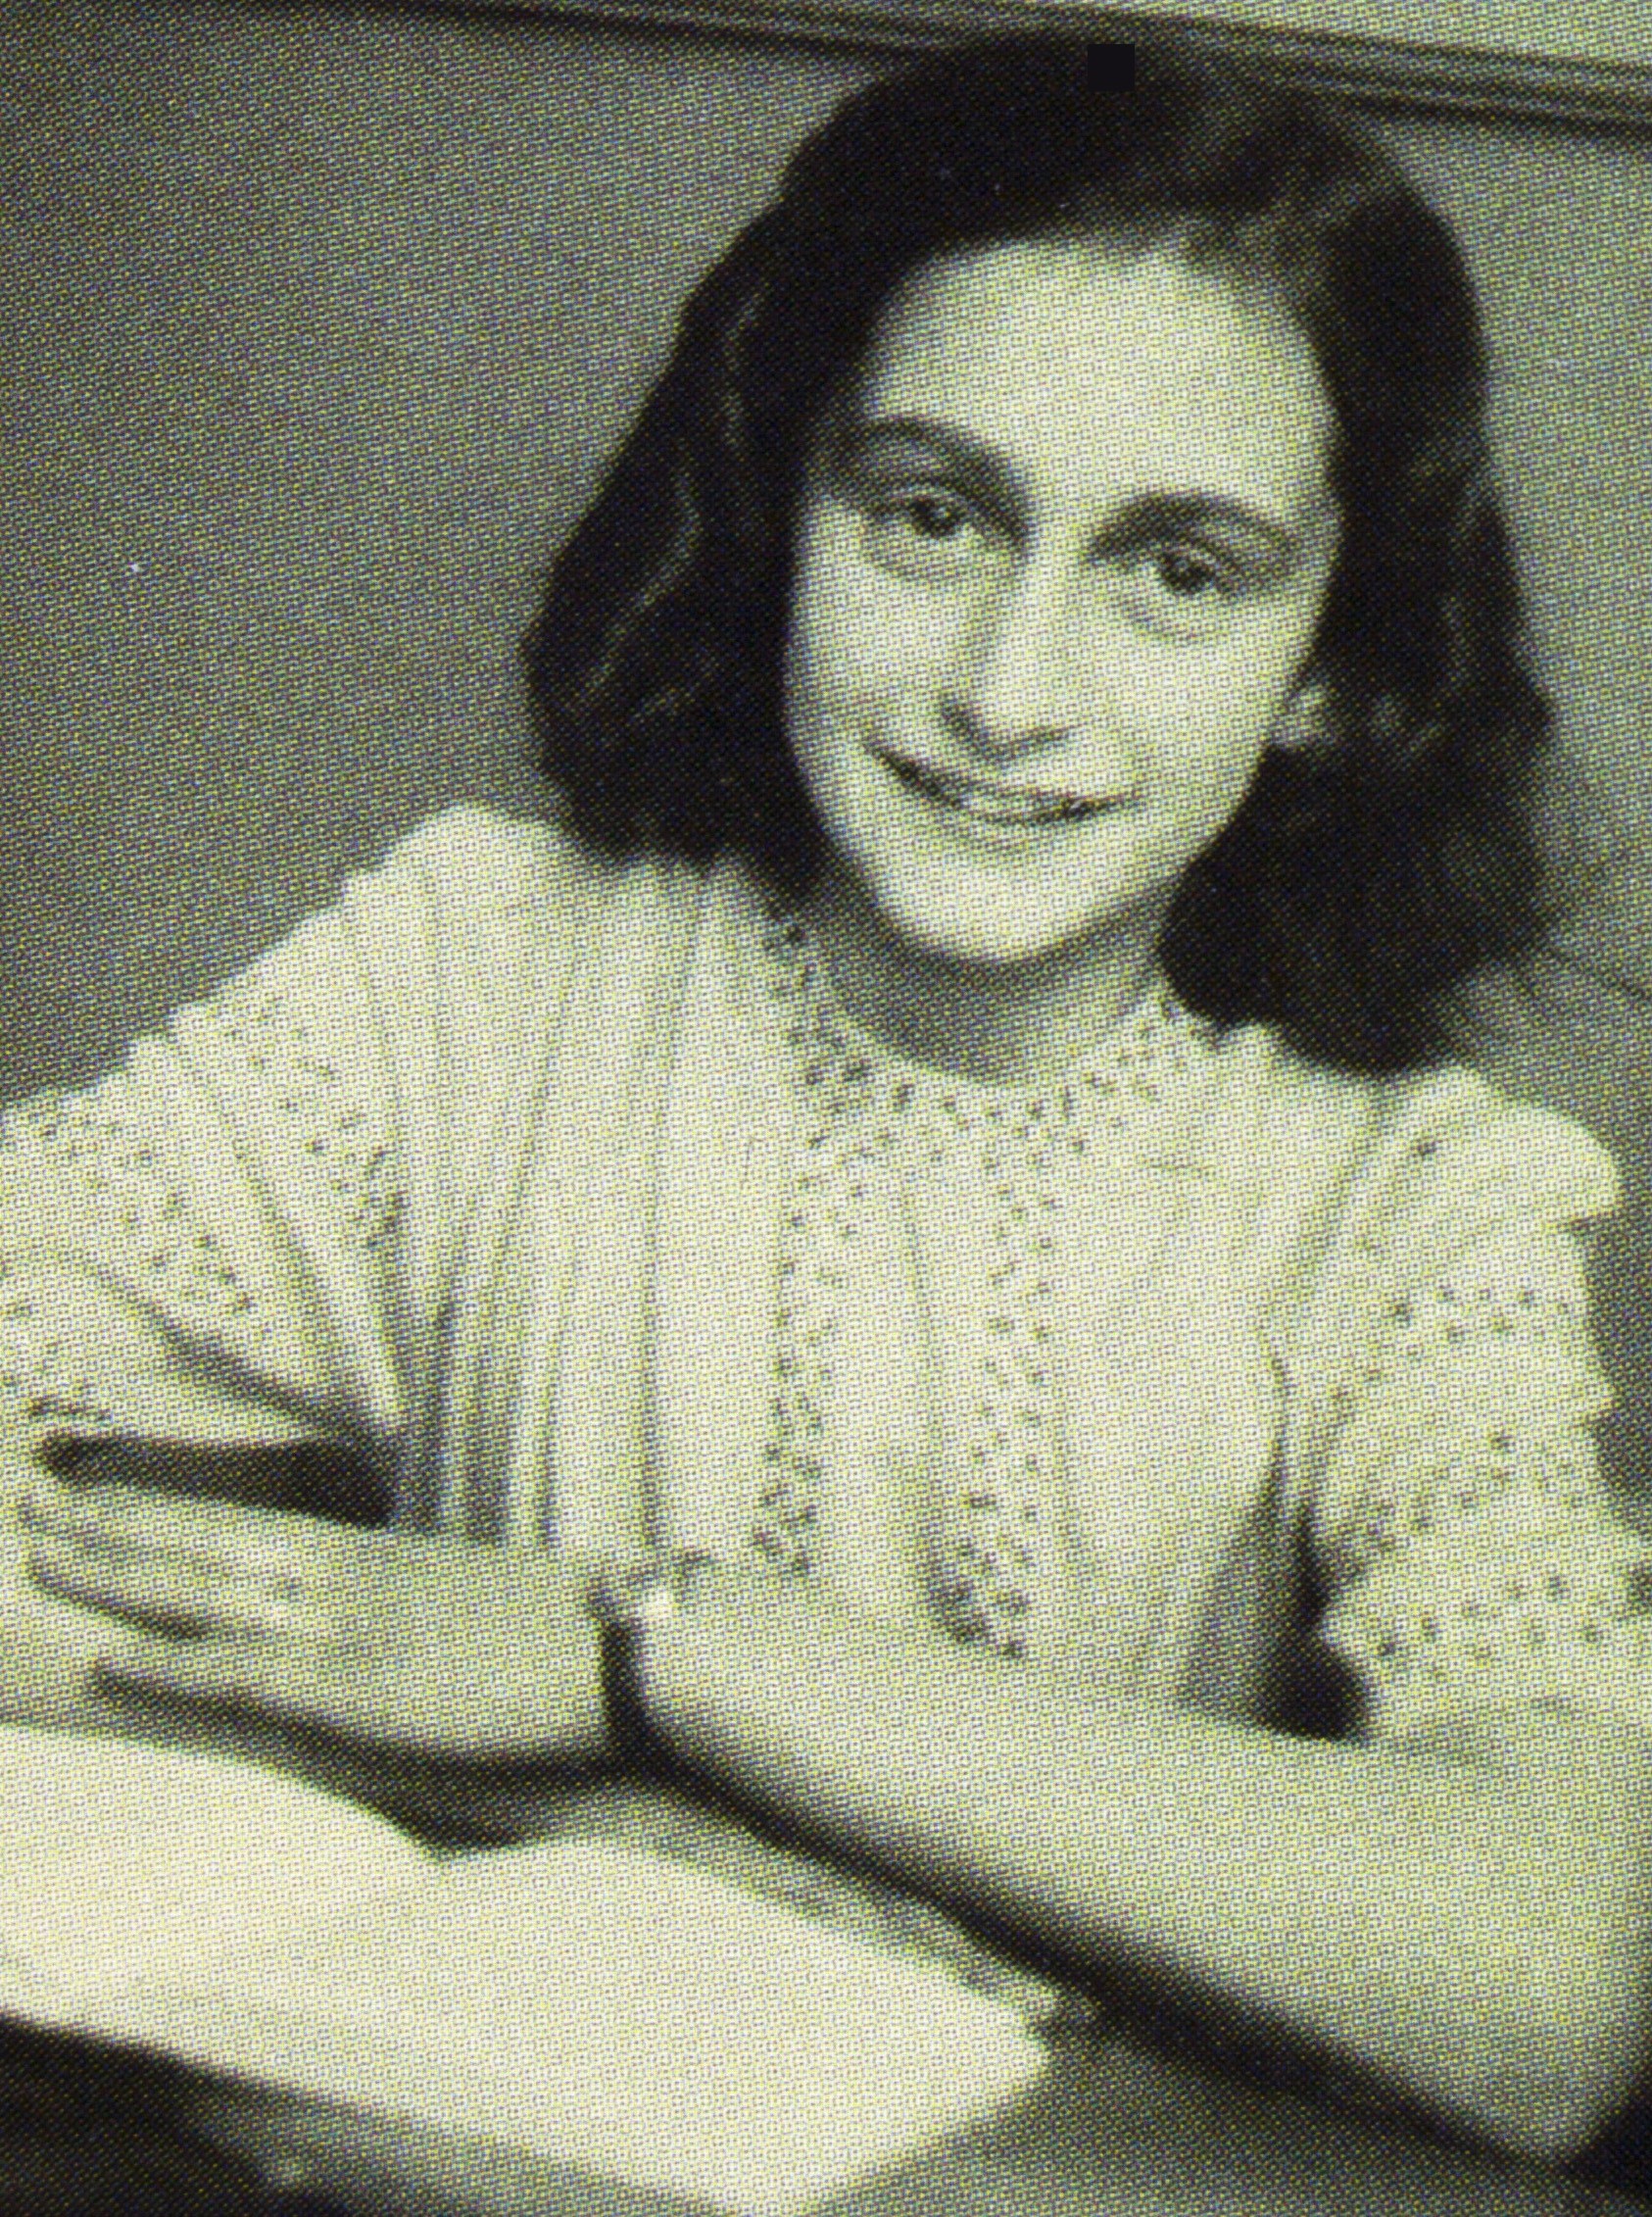 Anneliese Marie Frank viveu durante 25 meses confinada no andar superior de um prédio, com mais sete pessoas; todos escondidos dos horrores nazistas